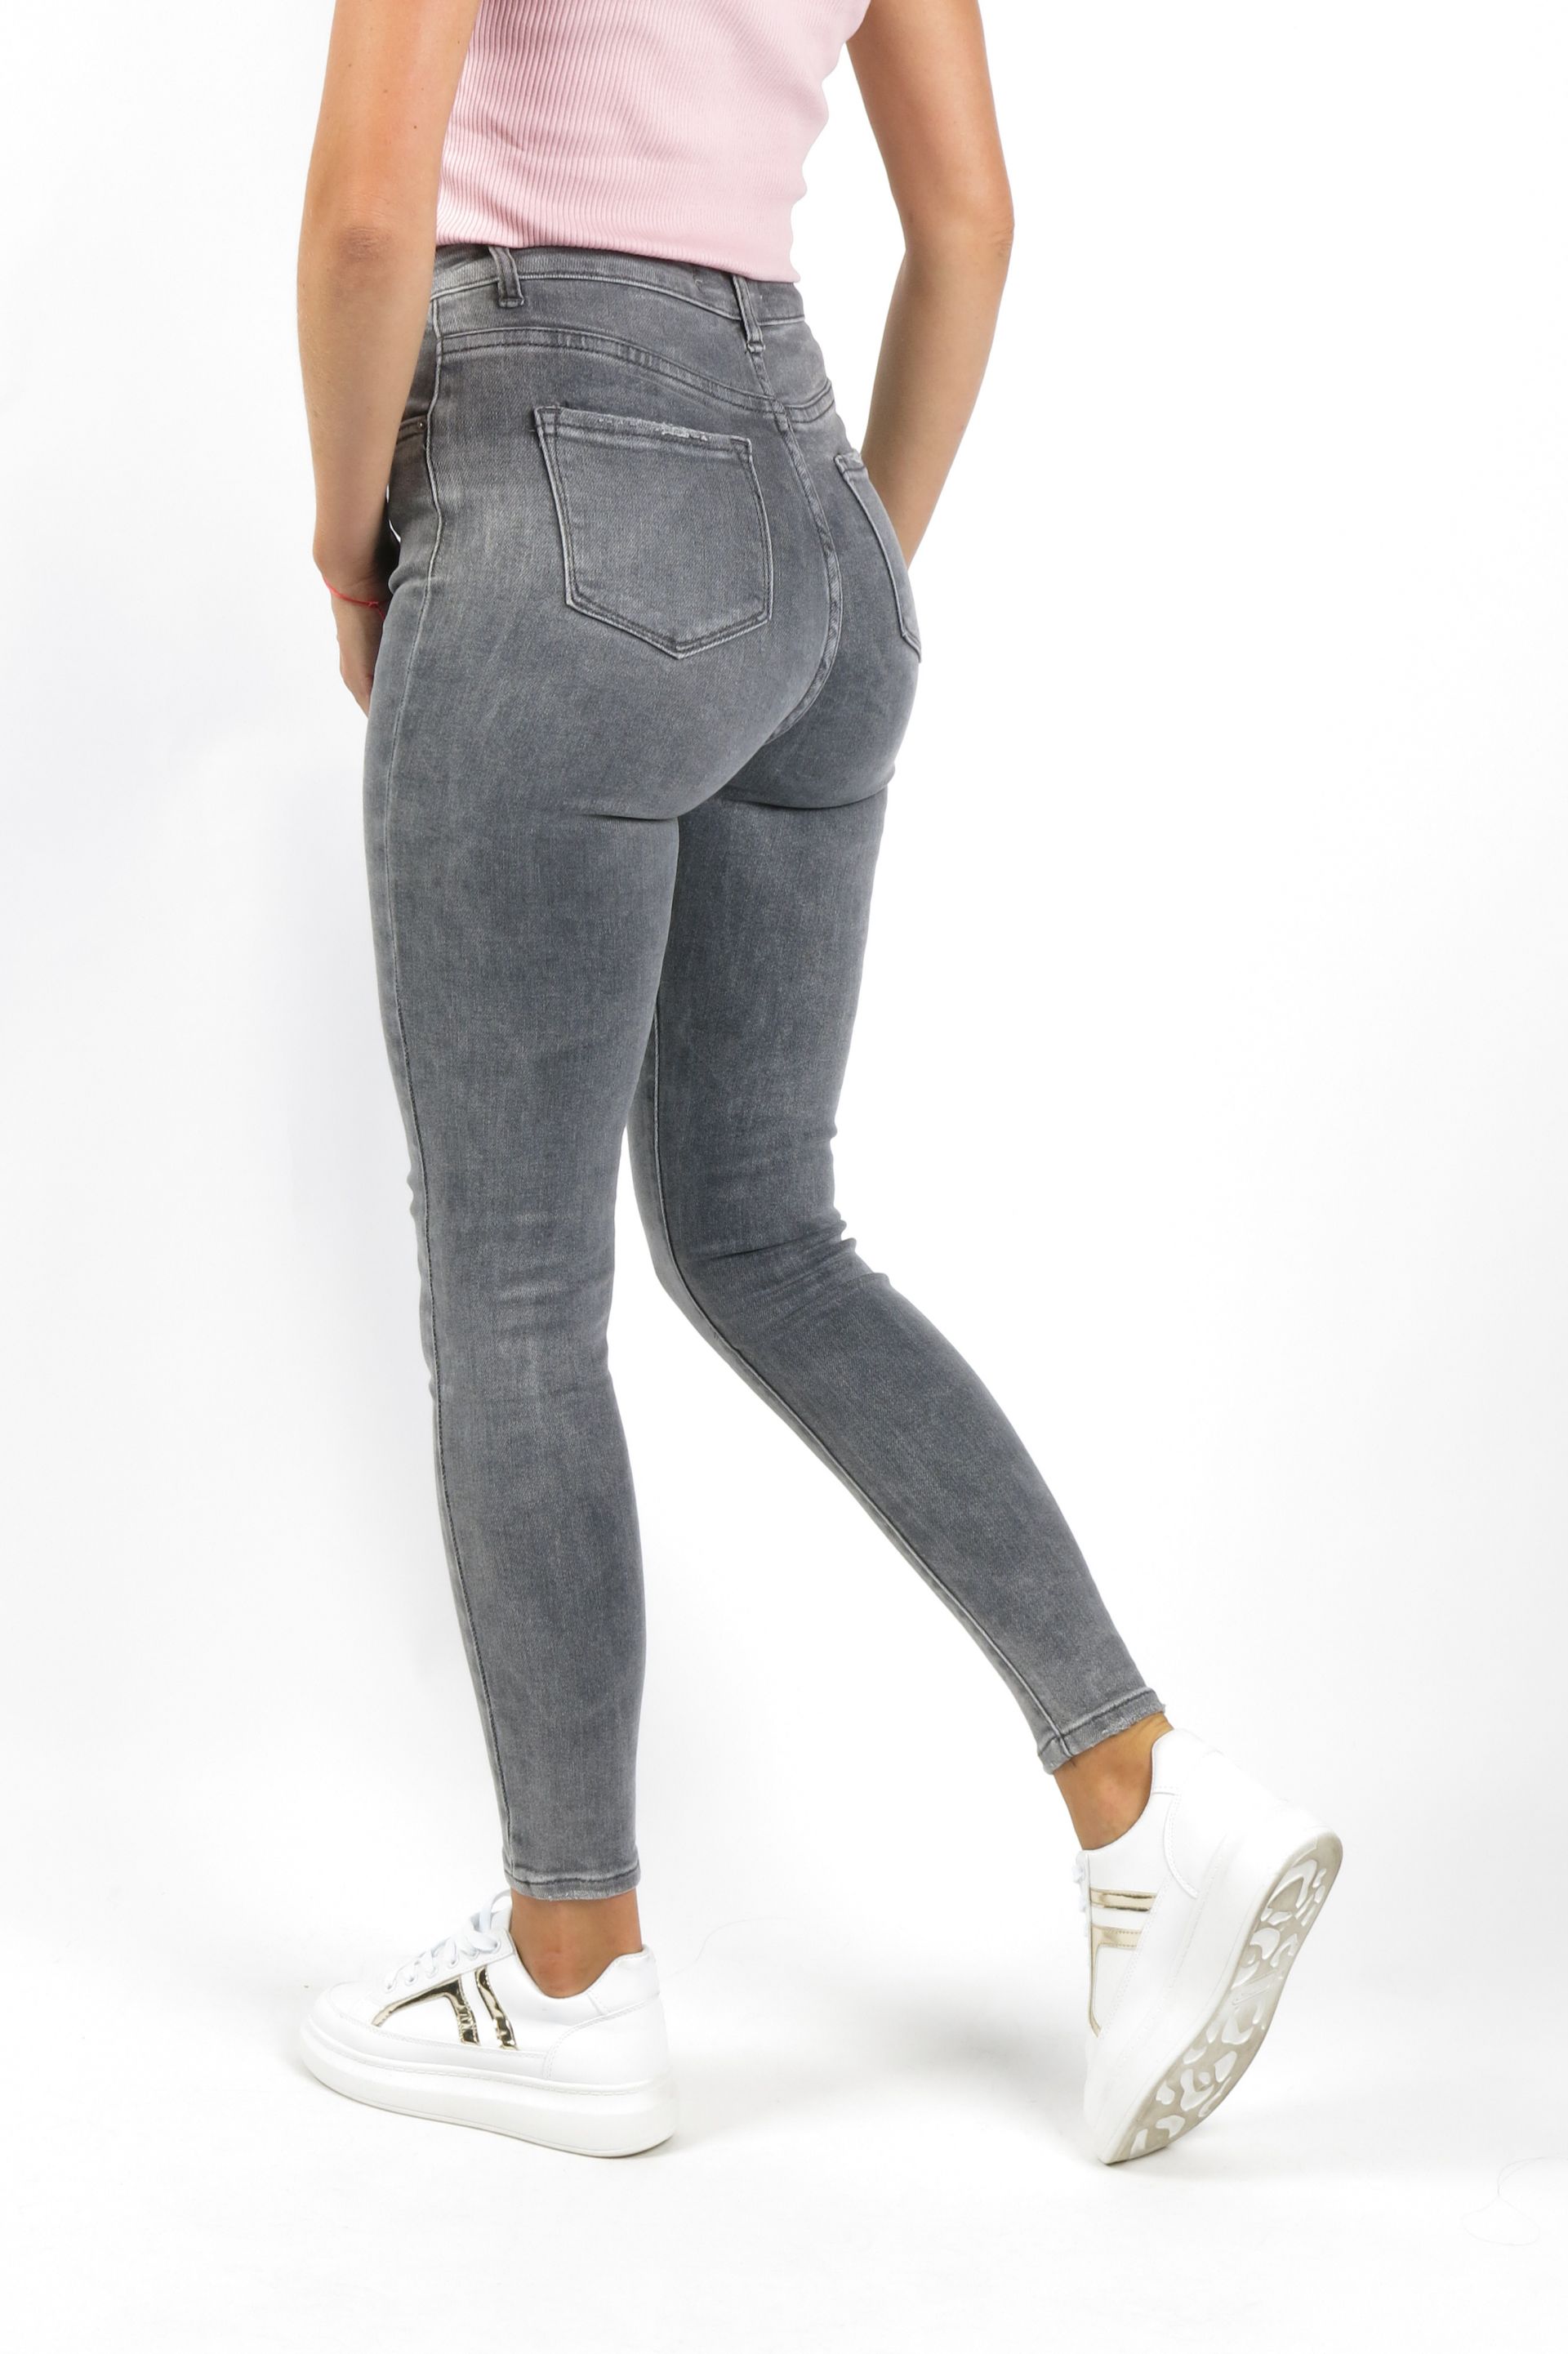 Jeans VS MISS SHW7237